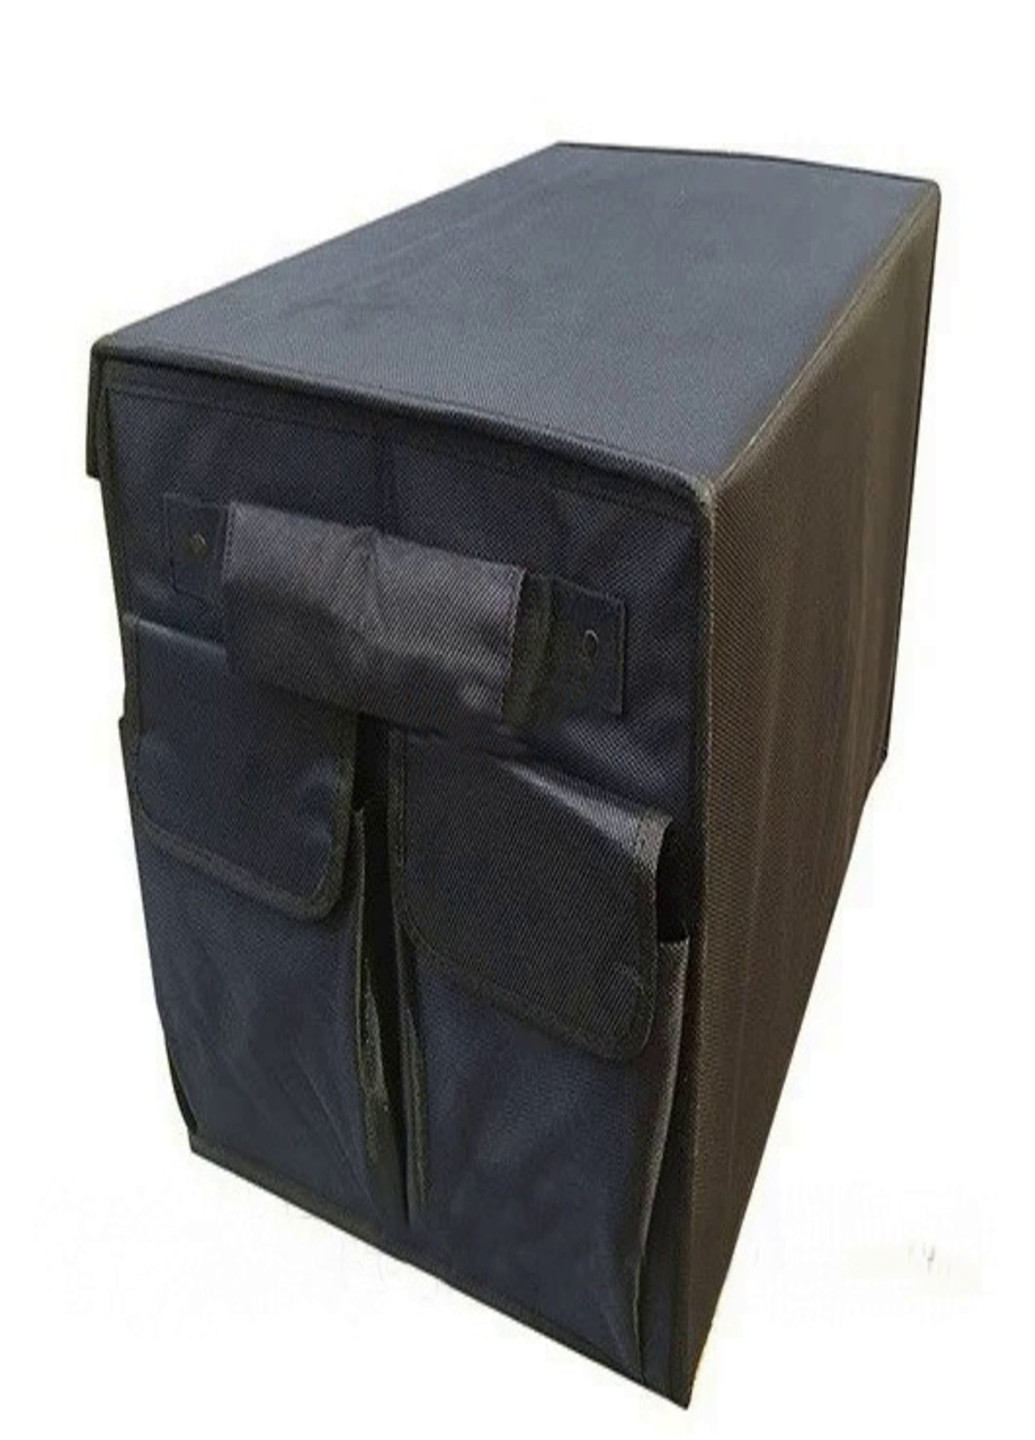 Складной органайзер с крышкой для багажника авто сумка (52332145) Francesco Marconi (205949234)